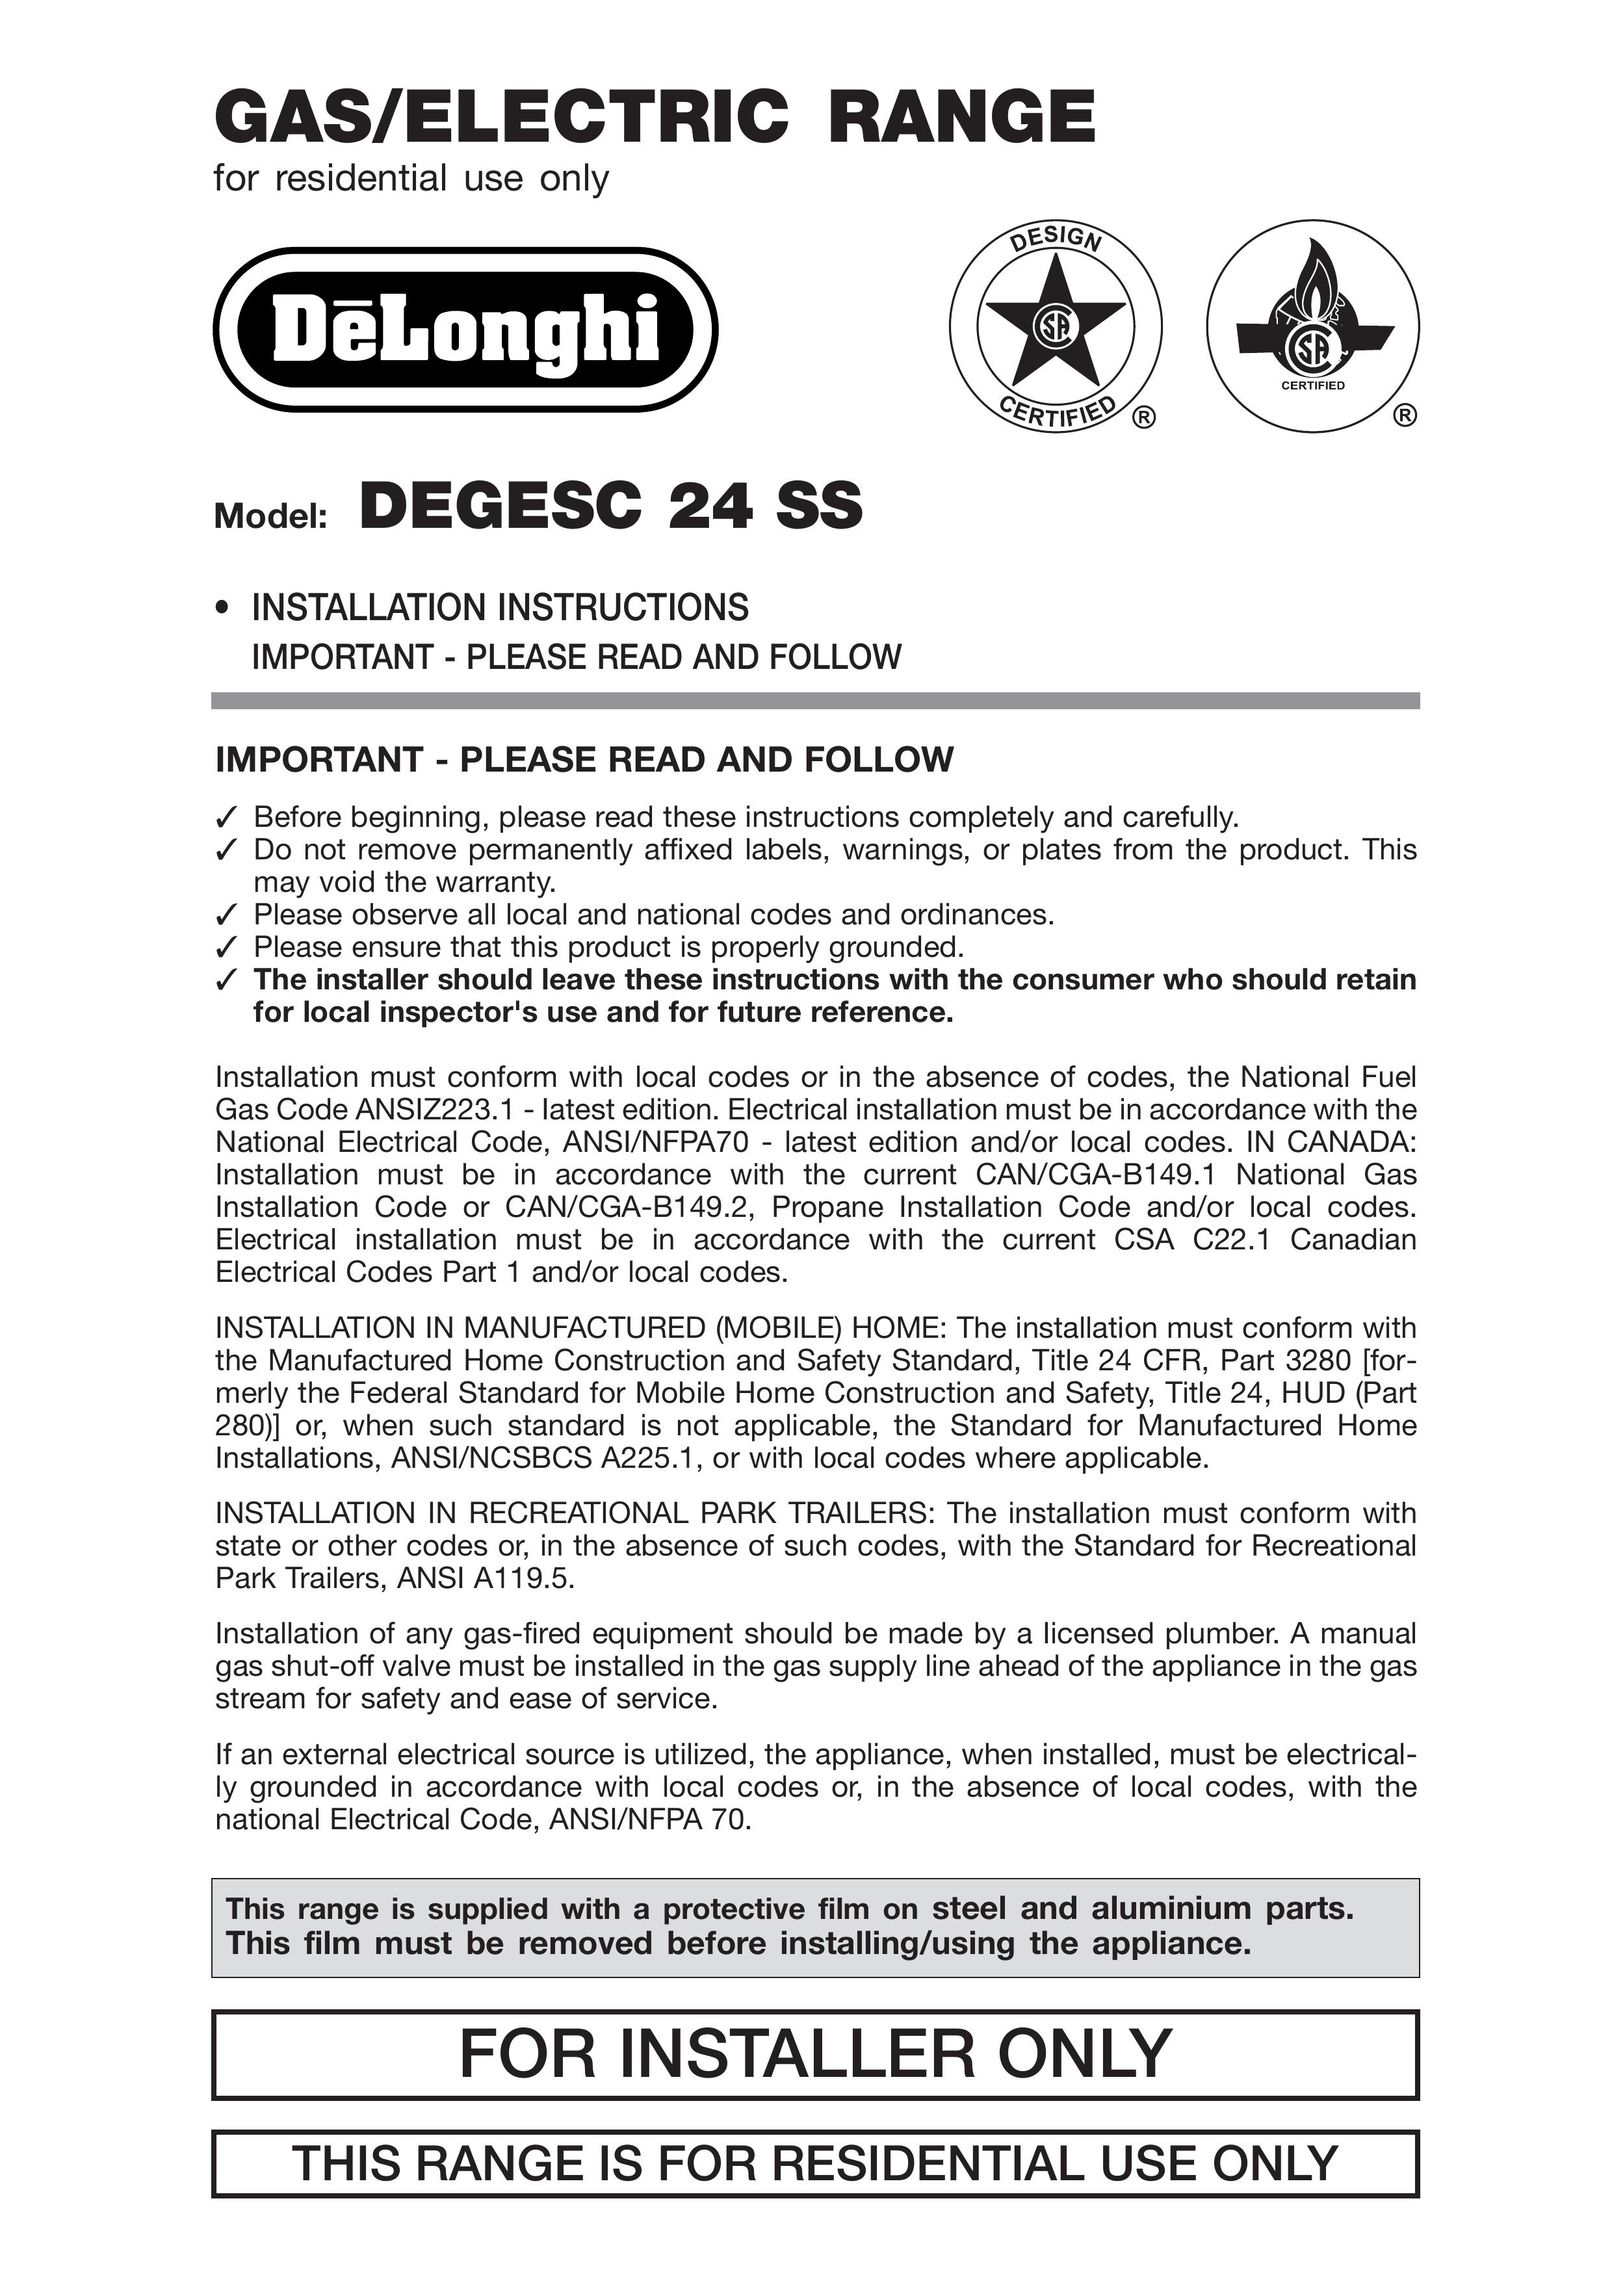 DeLonghi DEGESC24SS Range User Manual